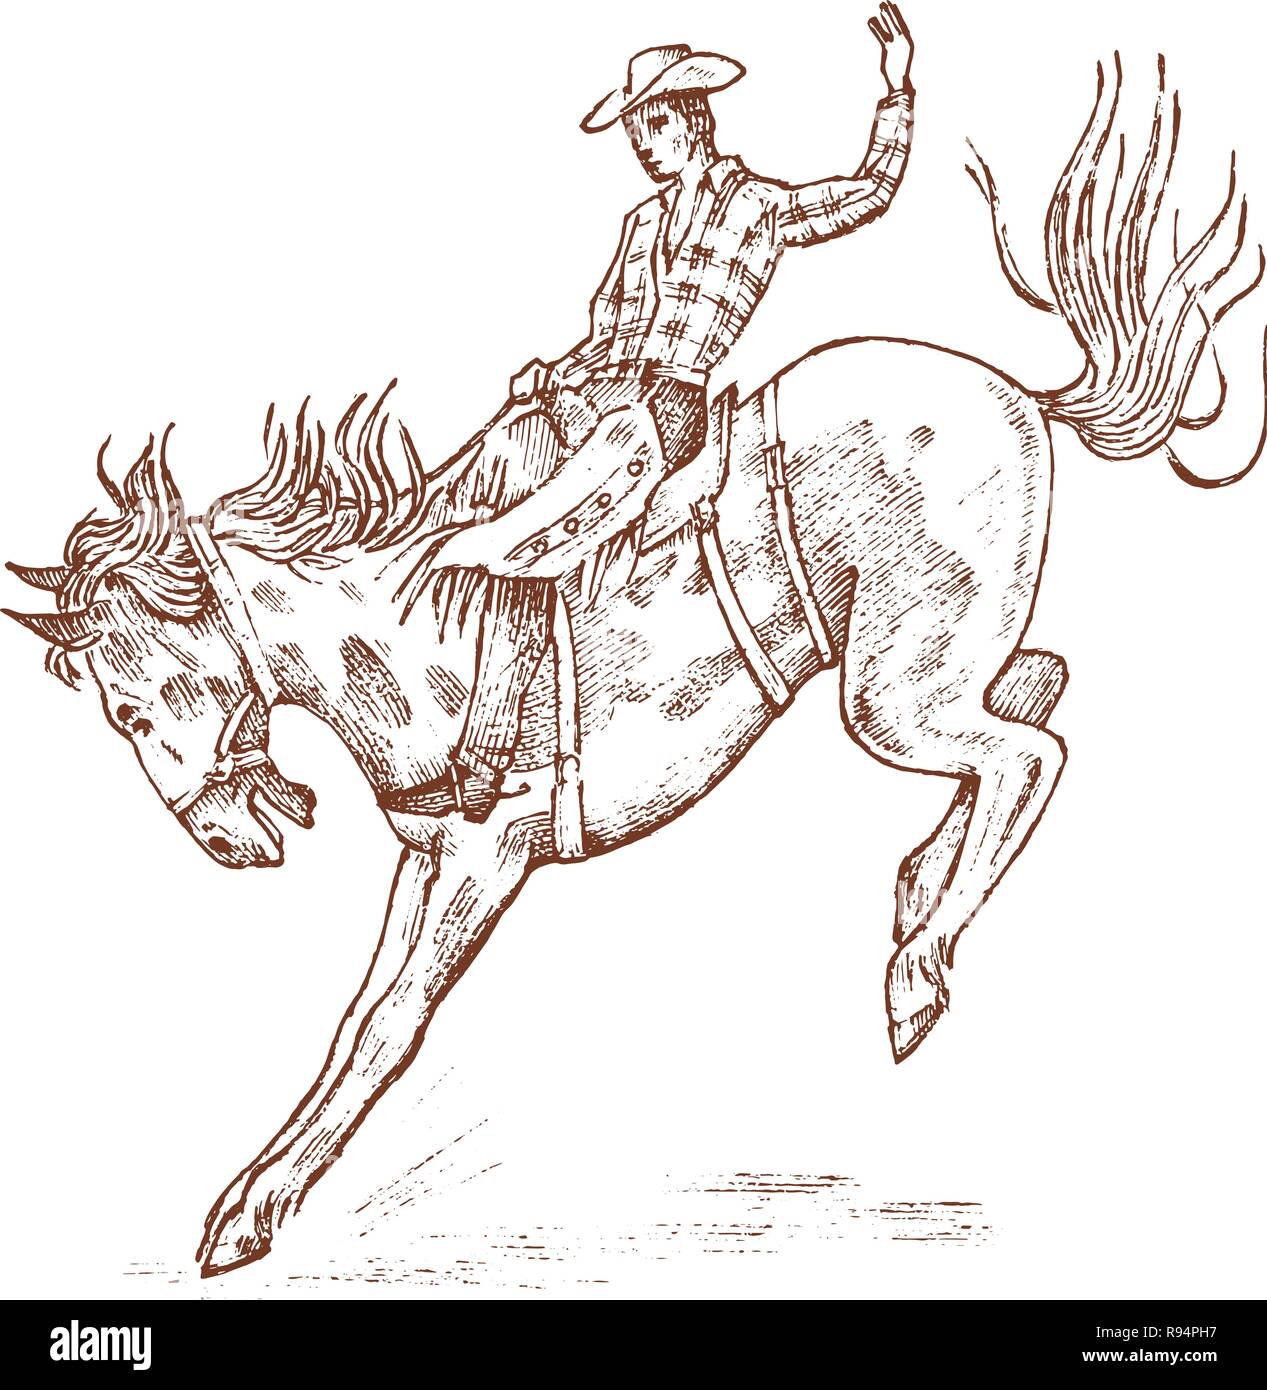 Cowboy ein Pferd reiten. Western rodeo Symbol, Texas Ranger, Polizeichef in hat. Wild West, Country Stil. Vintage graviert Hand gezeichnete Skizze. Stock Vektor